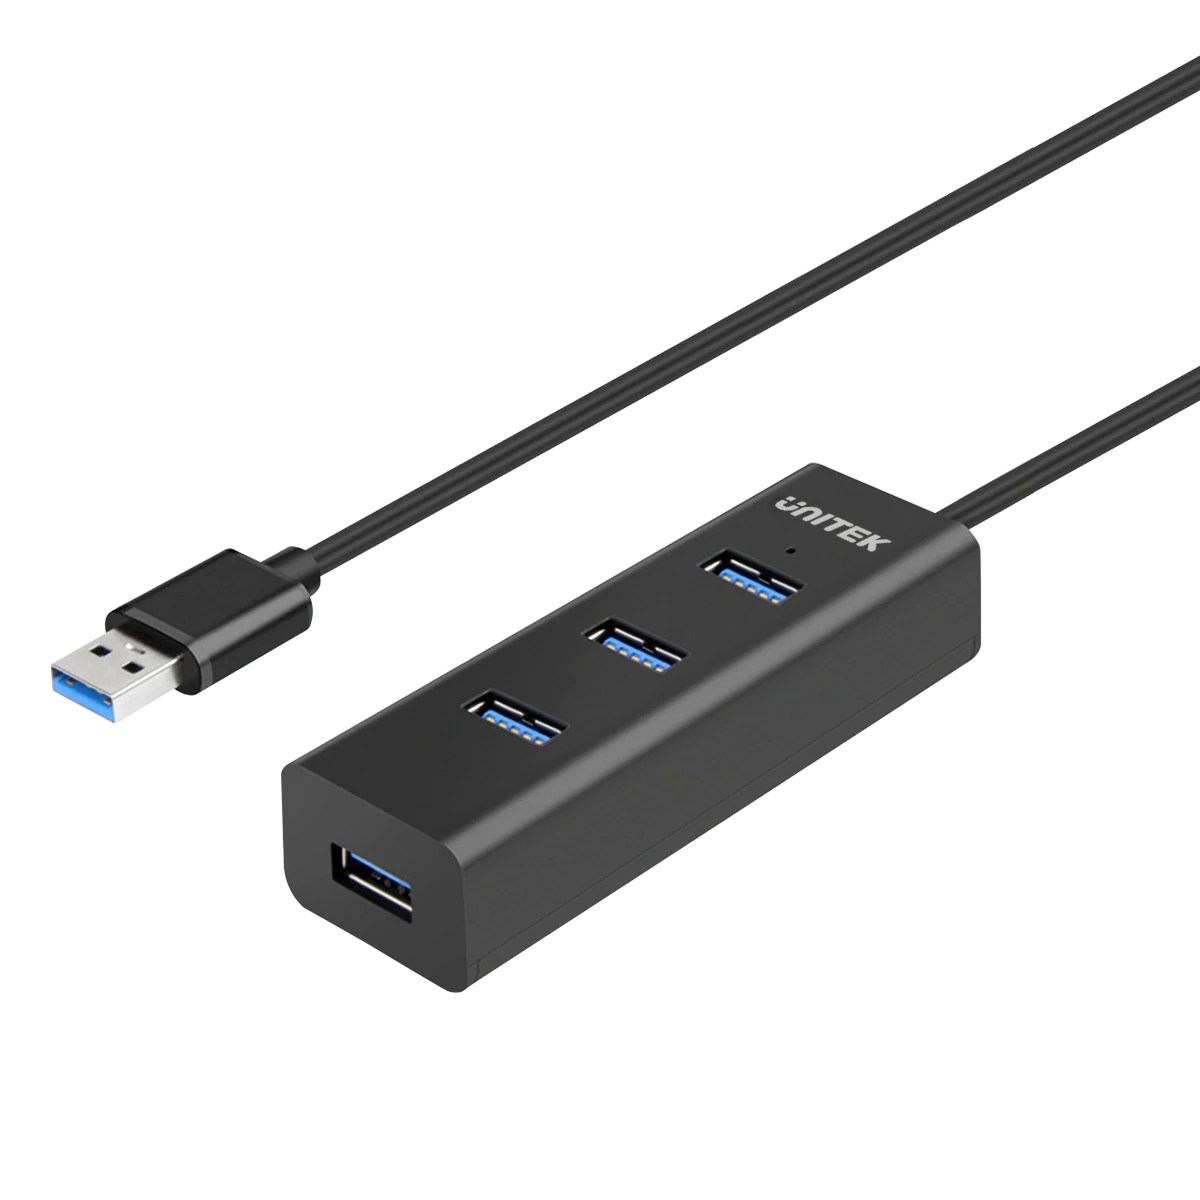 UNITEK Y-3089 Powered USB 3.0 Hub